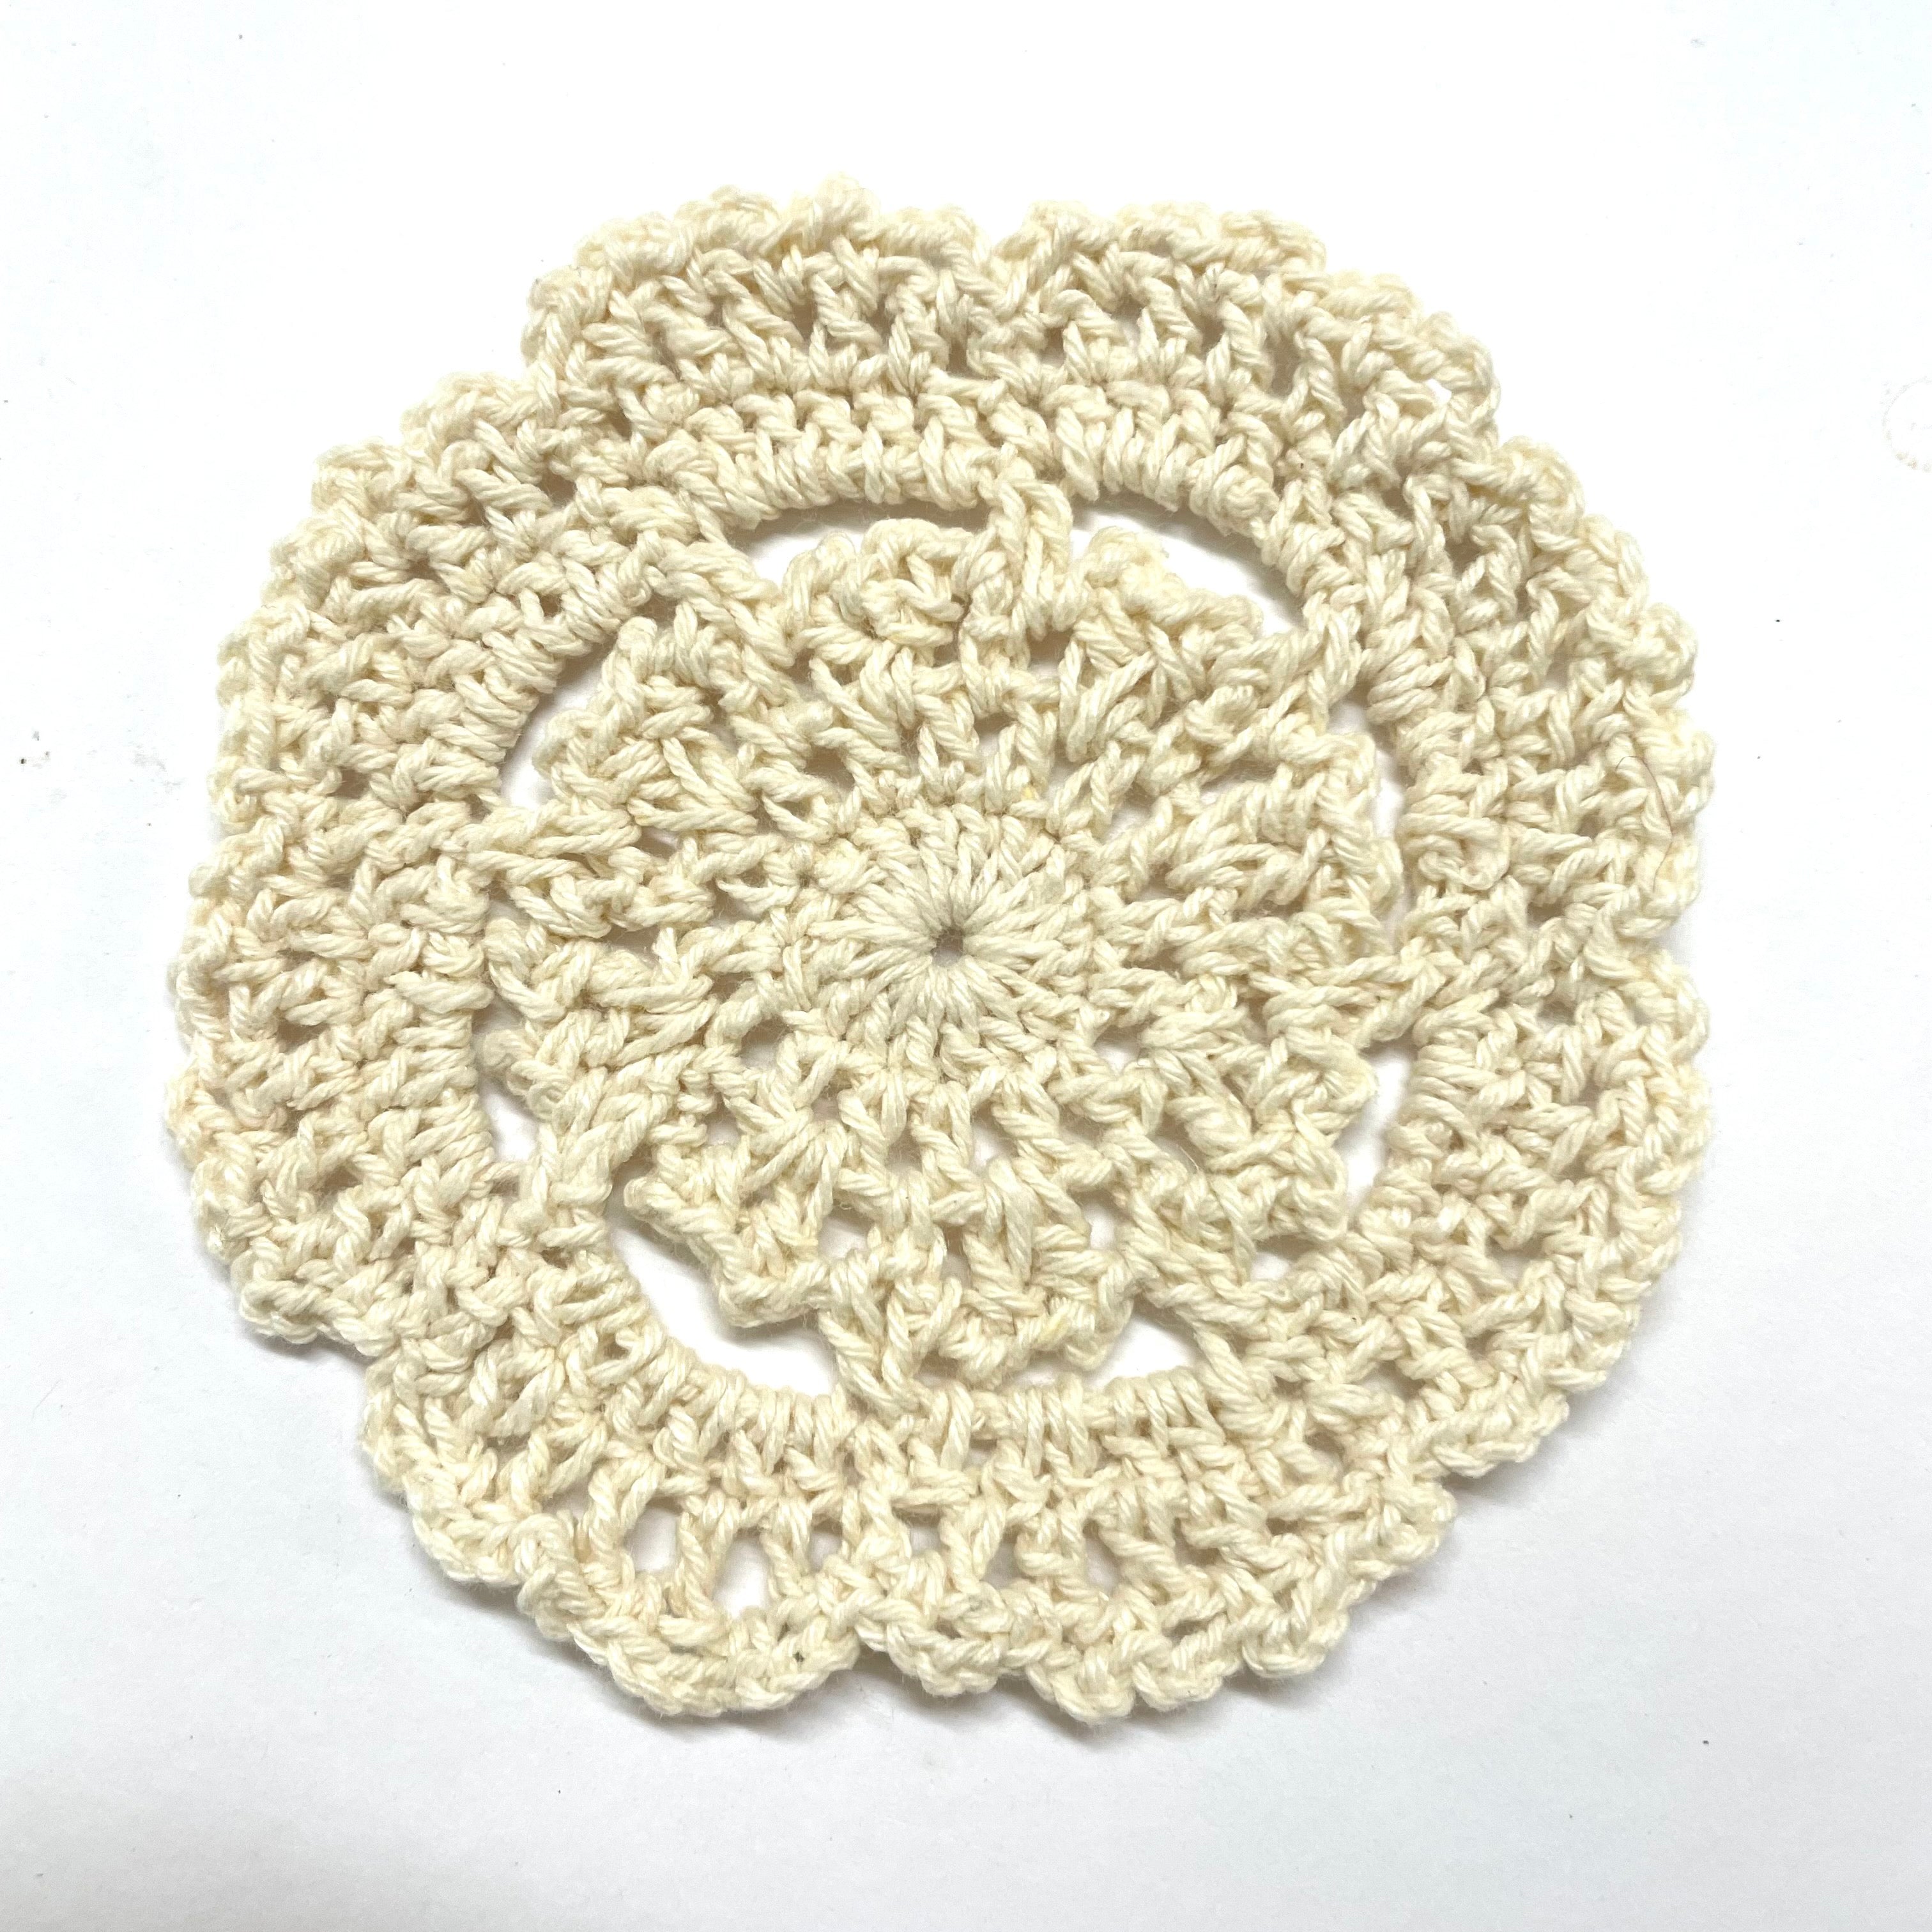 Crochet Cotton Round Doily 10cm - Beige